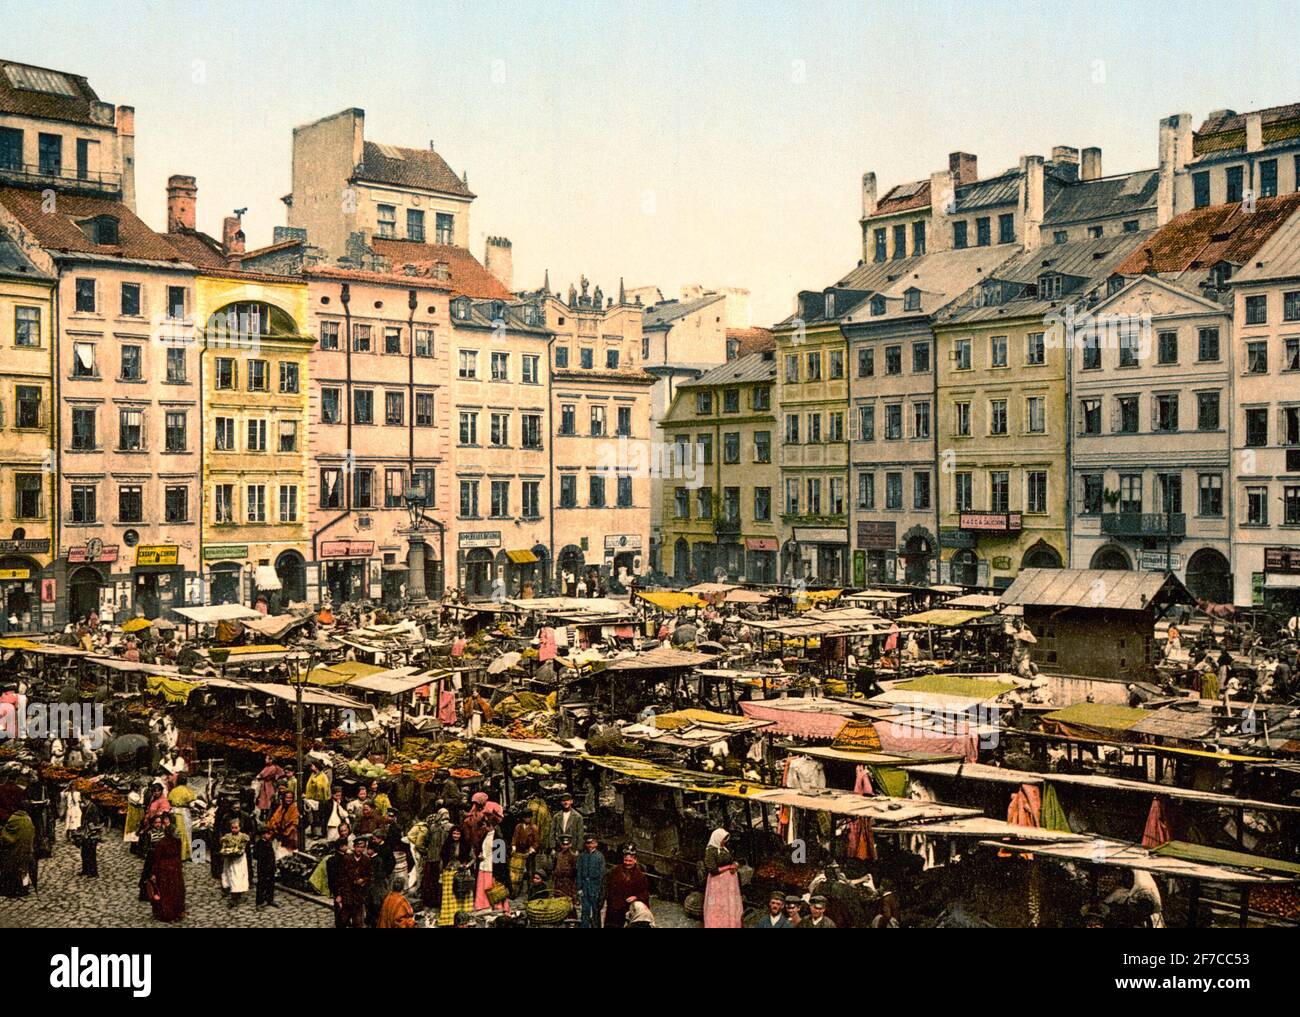 Vieille ville, Varsovie, Russie c'est-à-dire Varsovie, Pologne, vers 1900 Banque D'Images